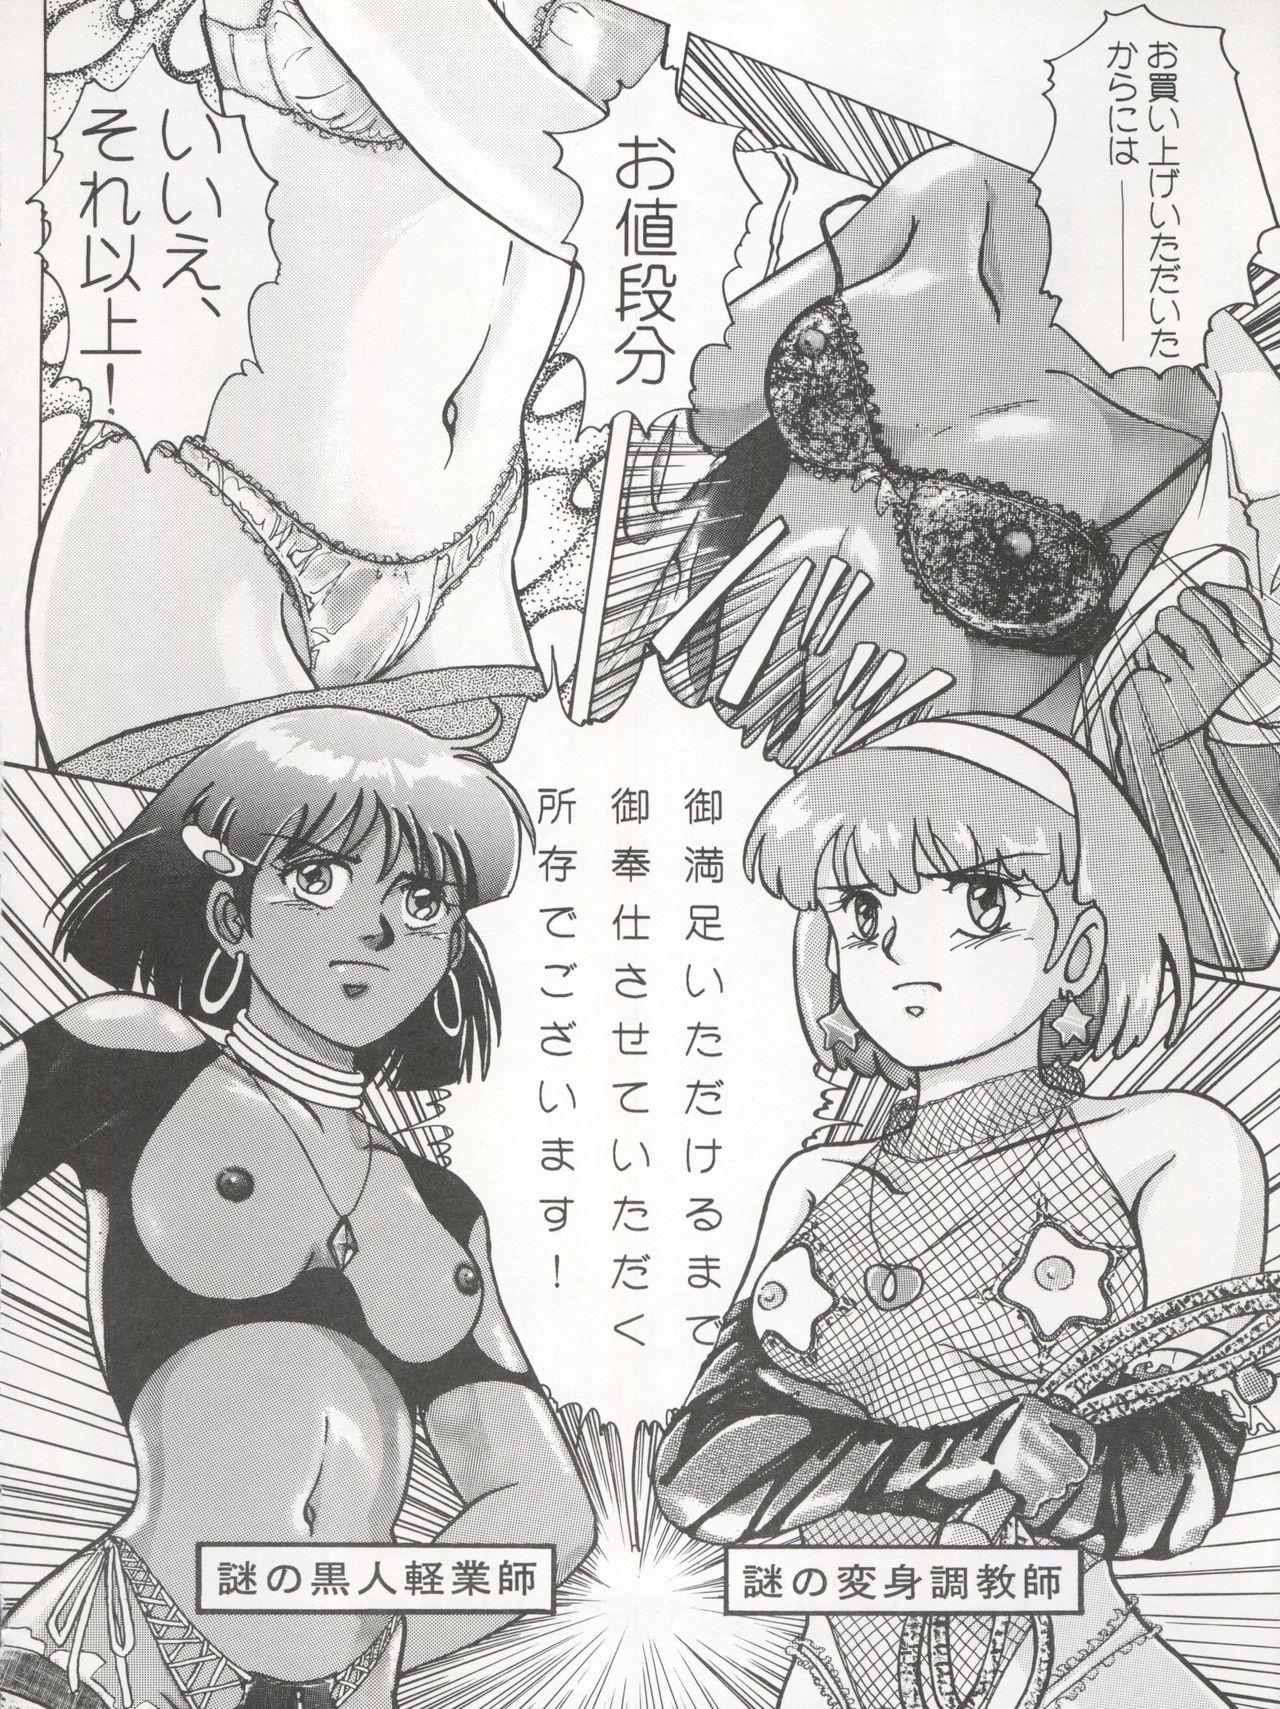 Arrecha 逮捕されちゃうぞ - Fushigi no umi no nadia Youre under arrest Minky momo 3x3 eyes Ninfeta - Page 4